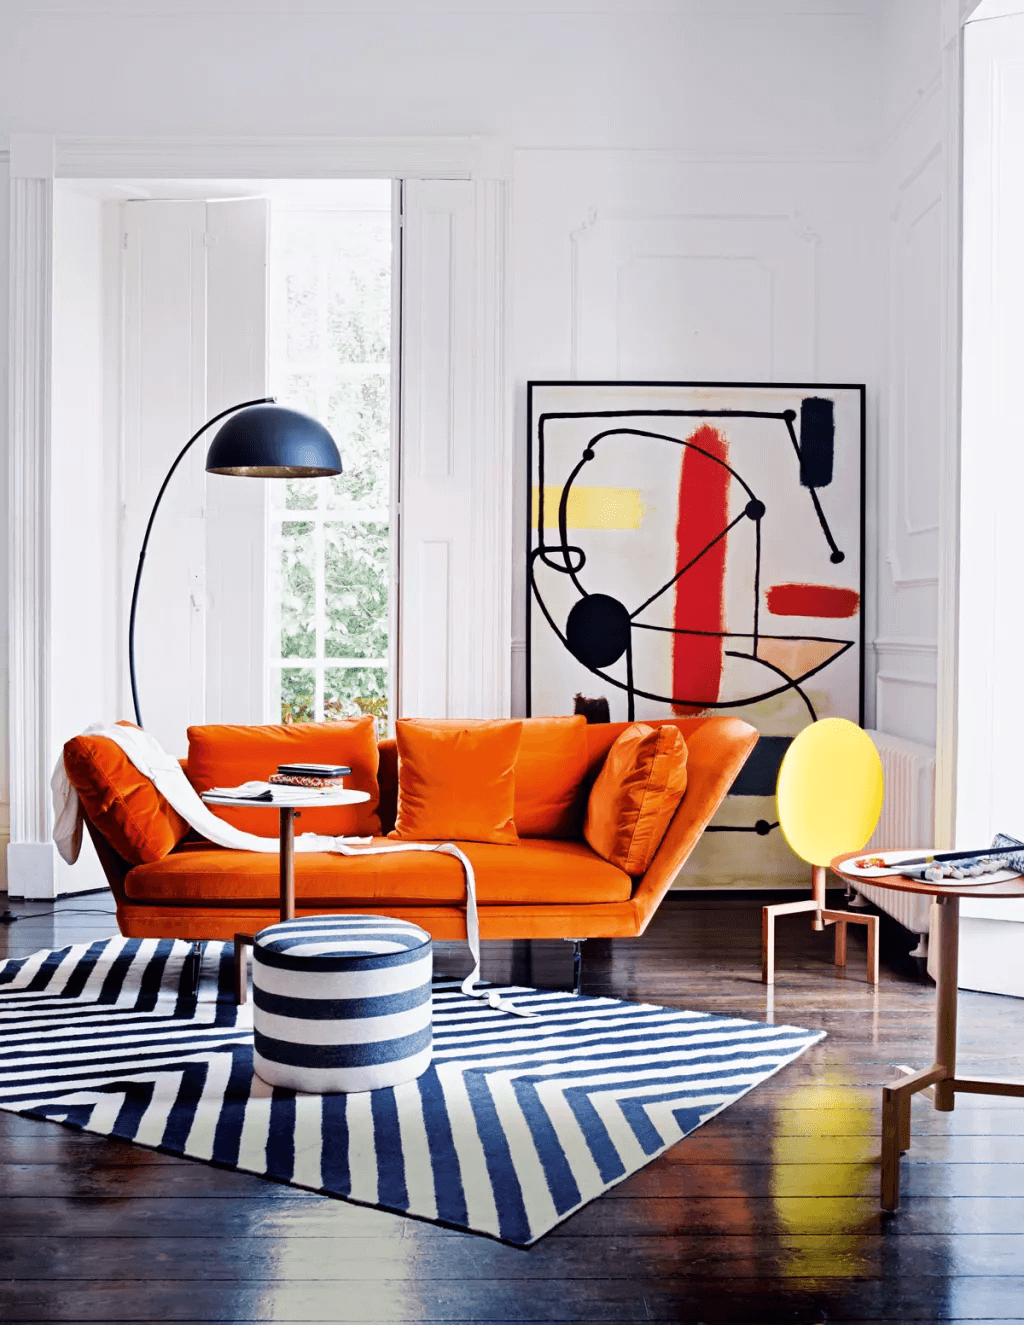 Sơn phòng khách màu trắng giúp làm nổi bật nội thất màu sắc trong phong cách hiện đại